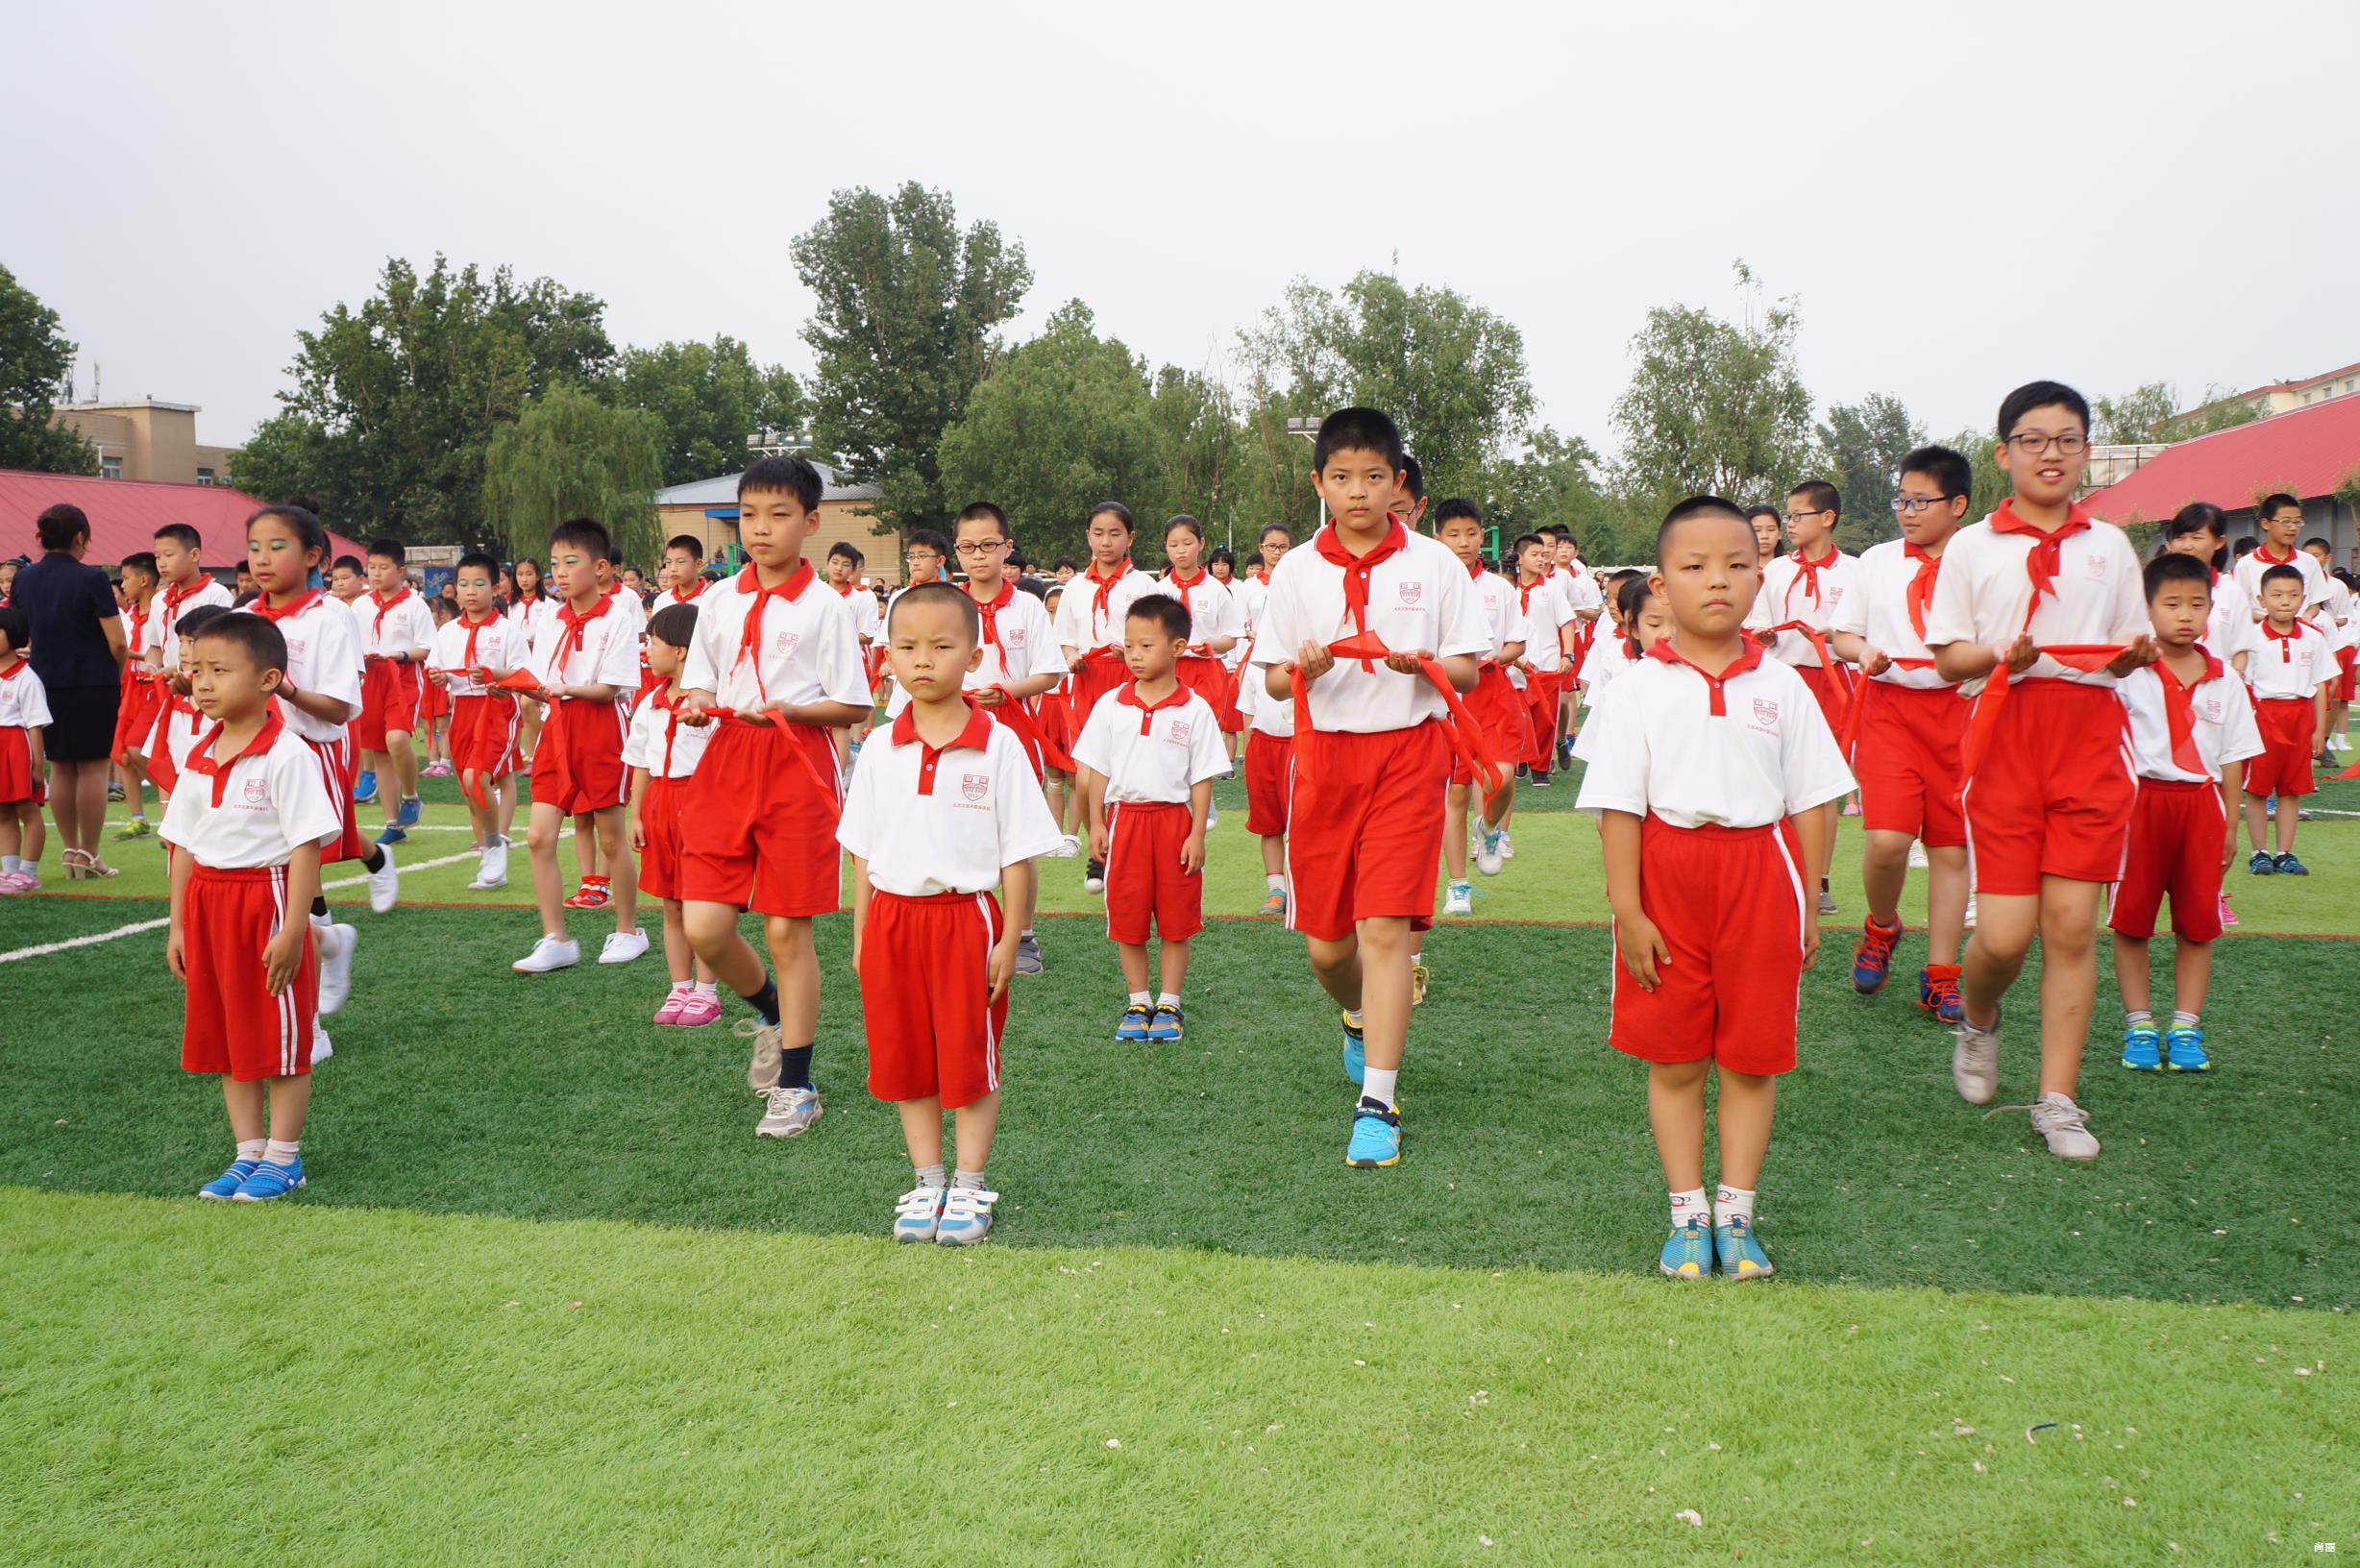 尚丽外国语学校小学部创建于1993年,获得北京市首批颁发《中华人民